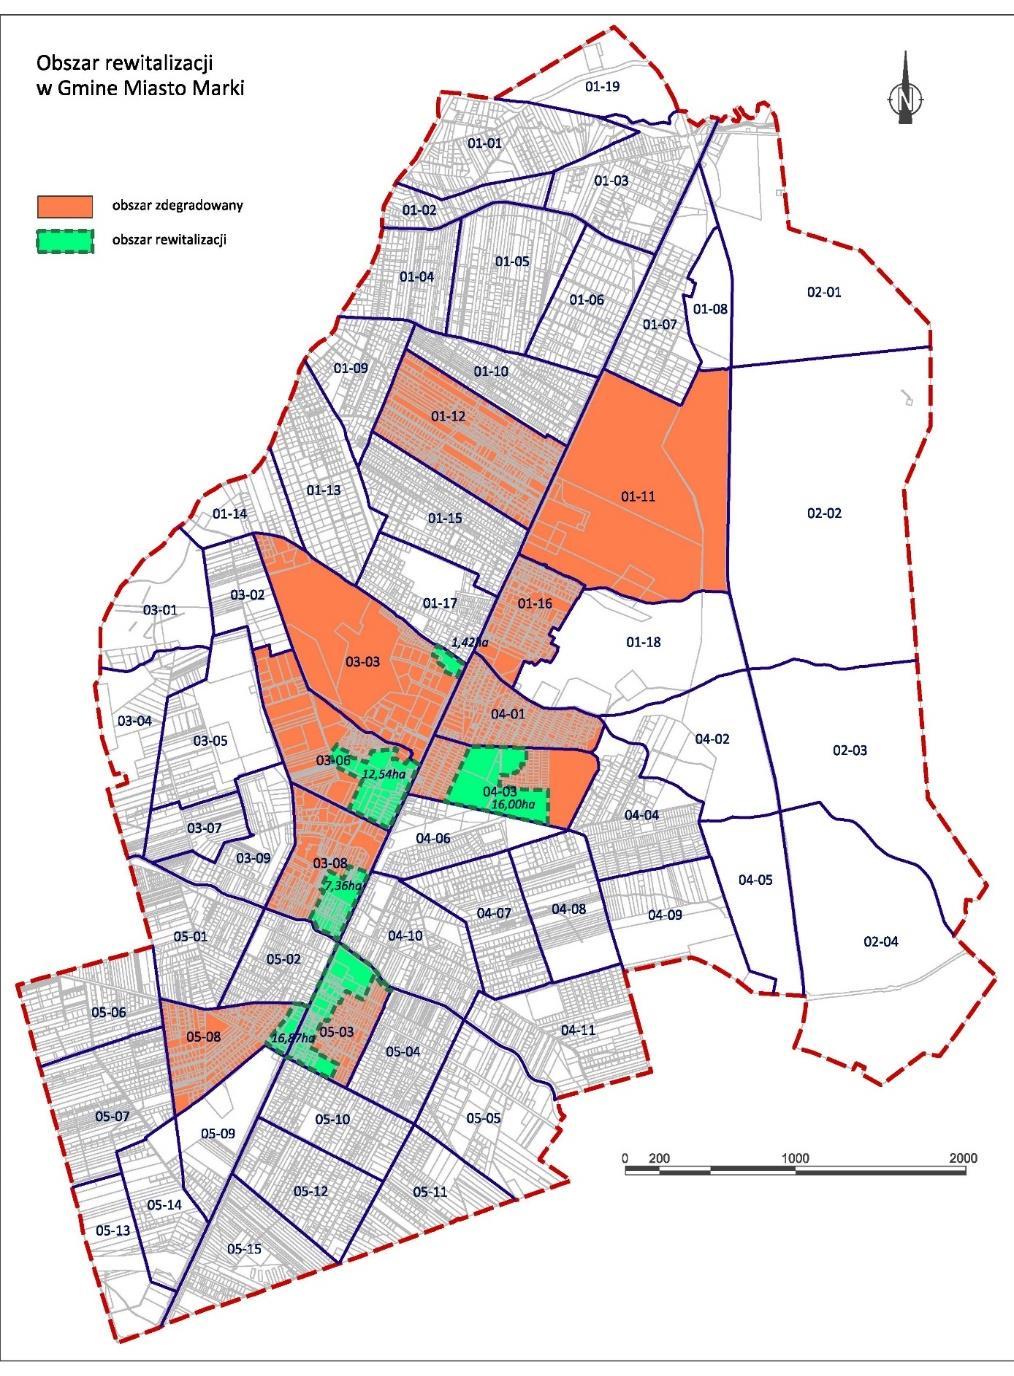 Obszar rewitalizacji w Markach OR zamieszkiwało 1525 osób (UM Marki, 2017 rok), co stanowiło 4,97% ludności gminy (liczba ludności gminy to 30673 osoby).